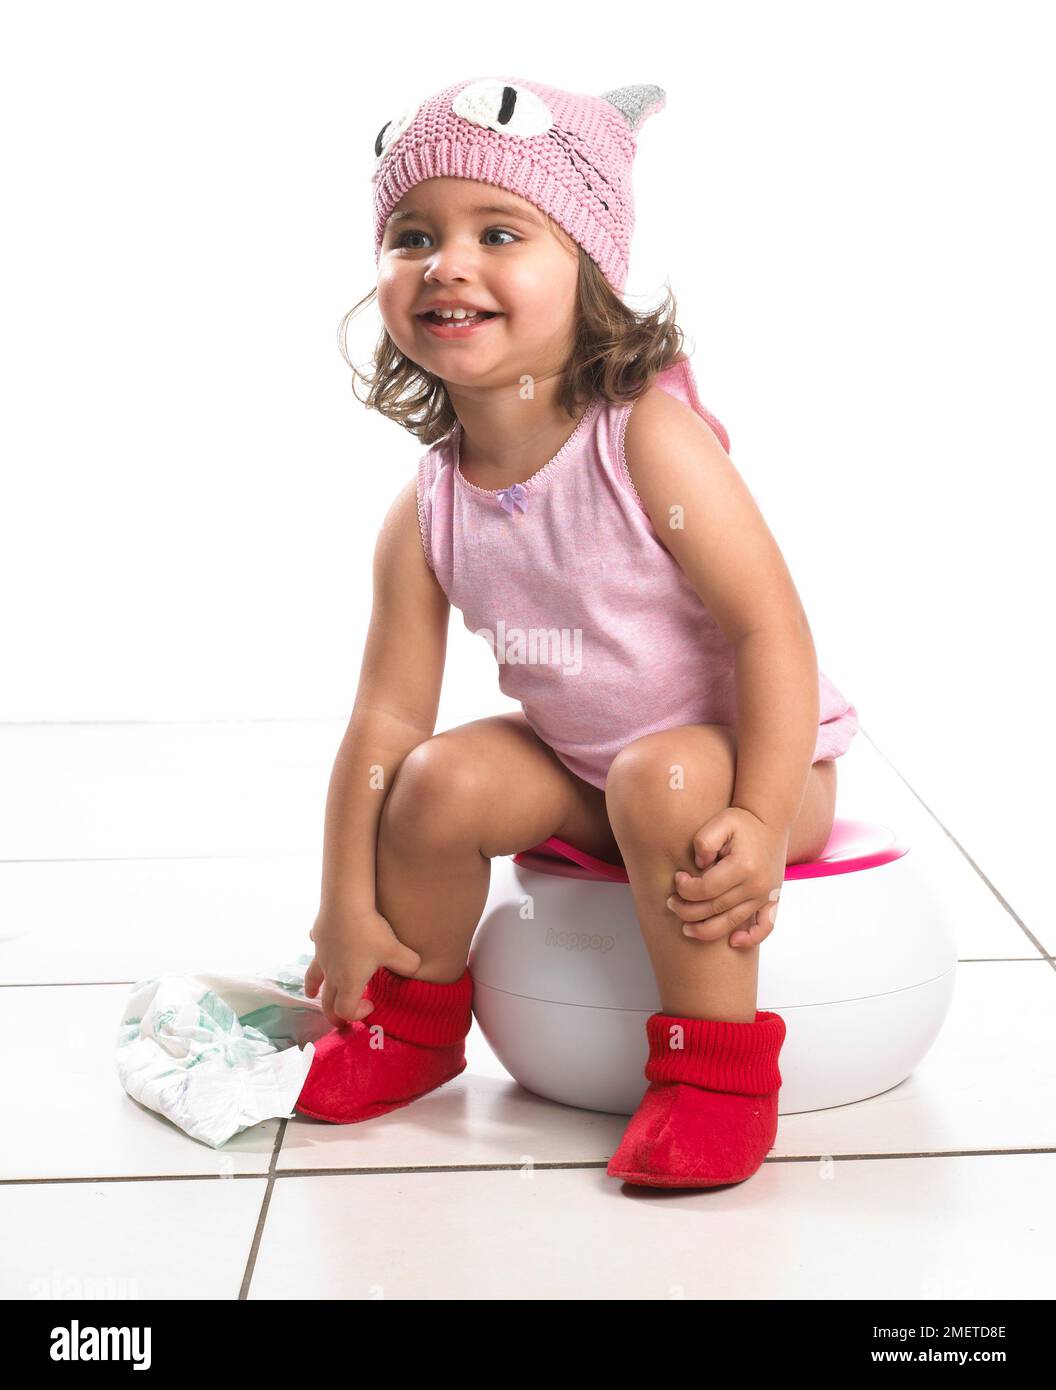 Fille portant un gilet rose et un chapeau de laine rose, des pantoufles rouges assis sur un pot blanc tenant la neppy, 20 mois Banque D'Images